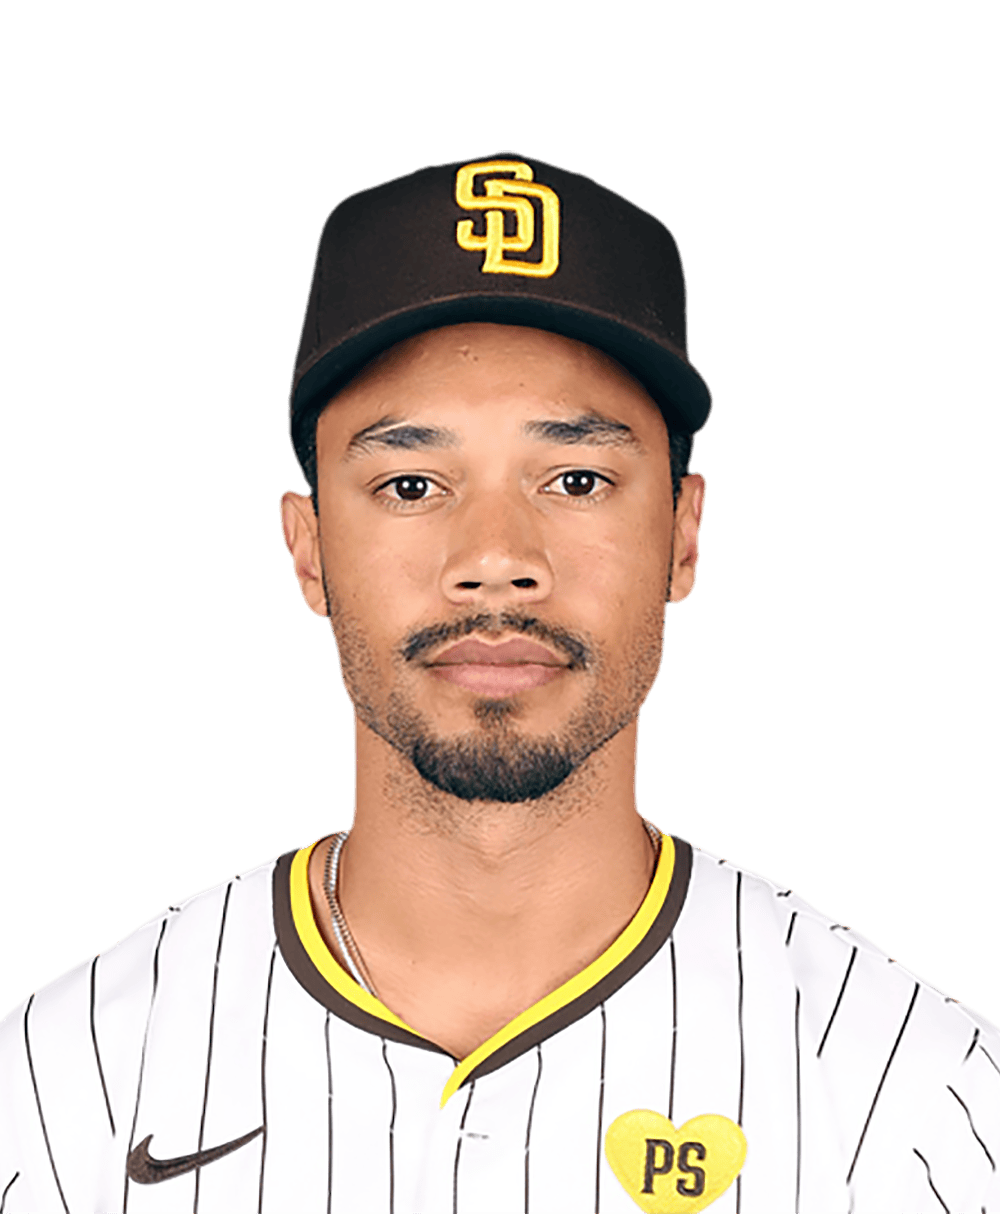 Cal Mitchell - MLB News, Rumors, & Updates